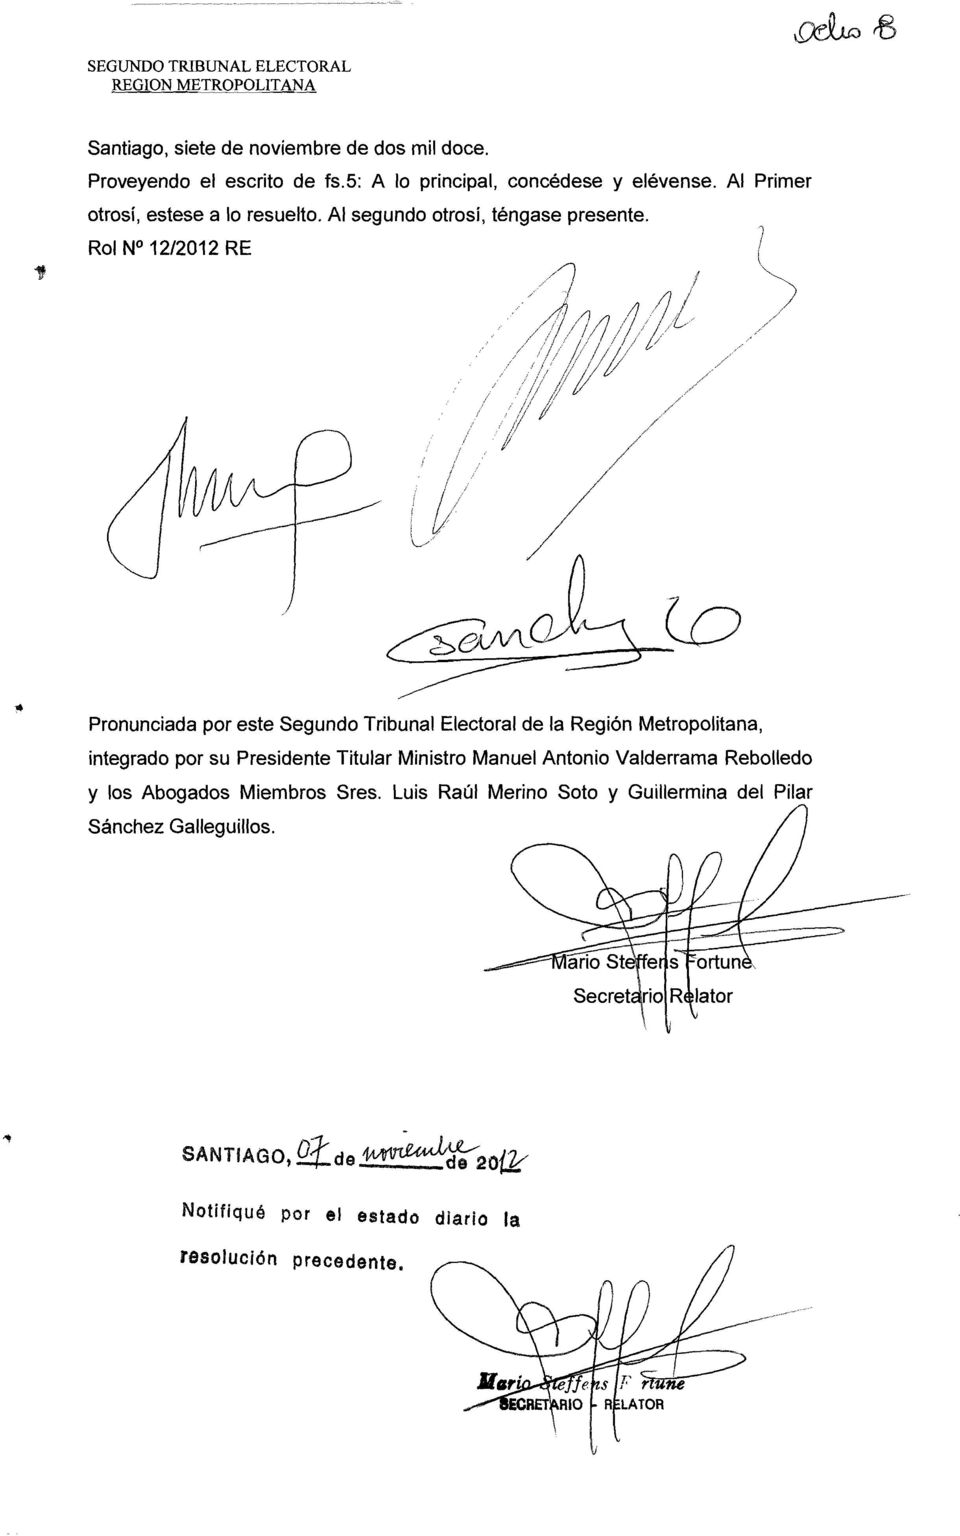 Rol N 12/2012 RE Pronunciada por este Segundo Tribunal Electoral de la Región Metropolitana, integrado por su Presidente Titular Ministro Manuel Antonio